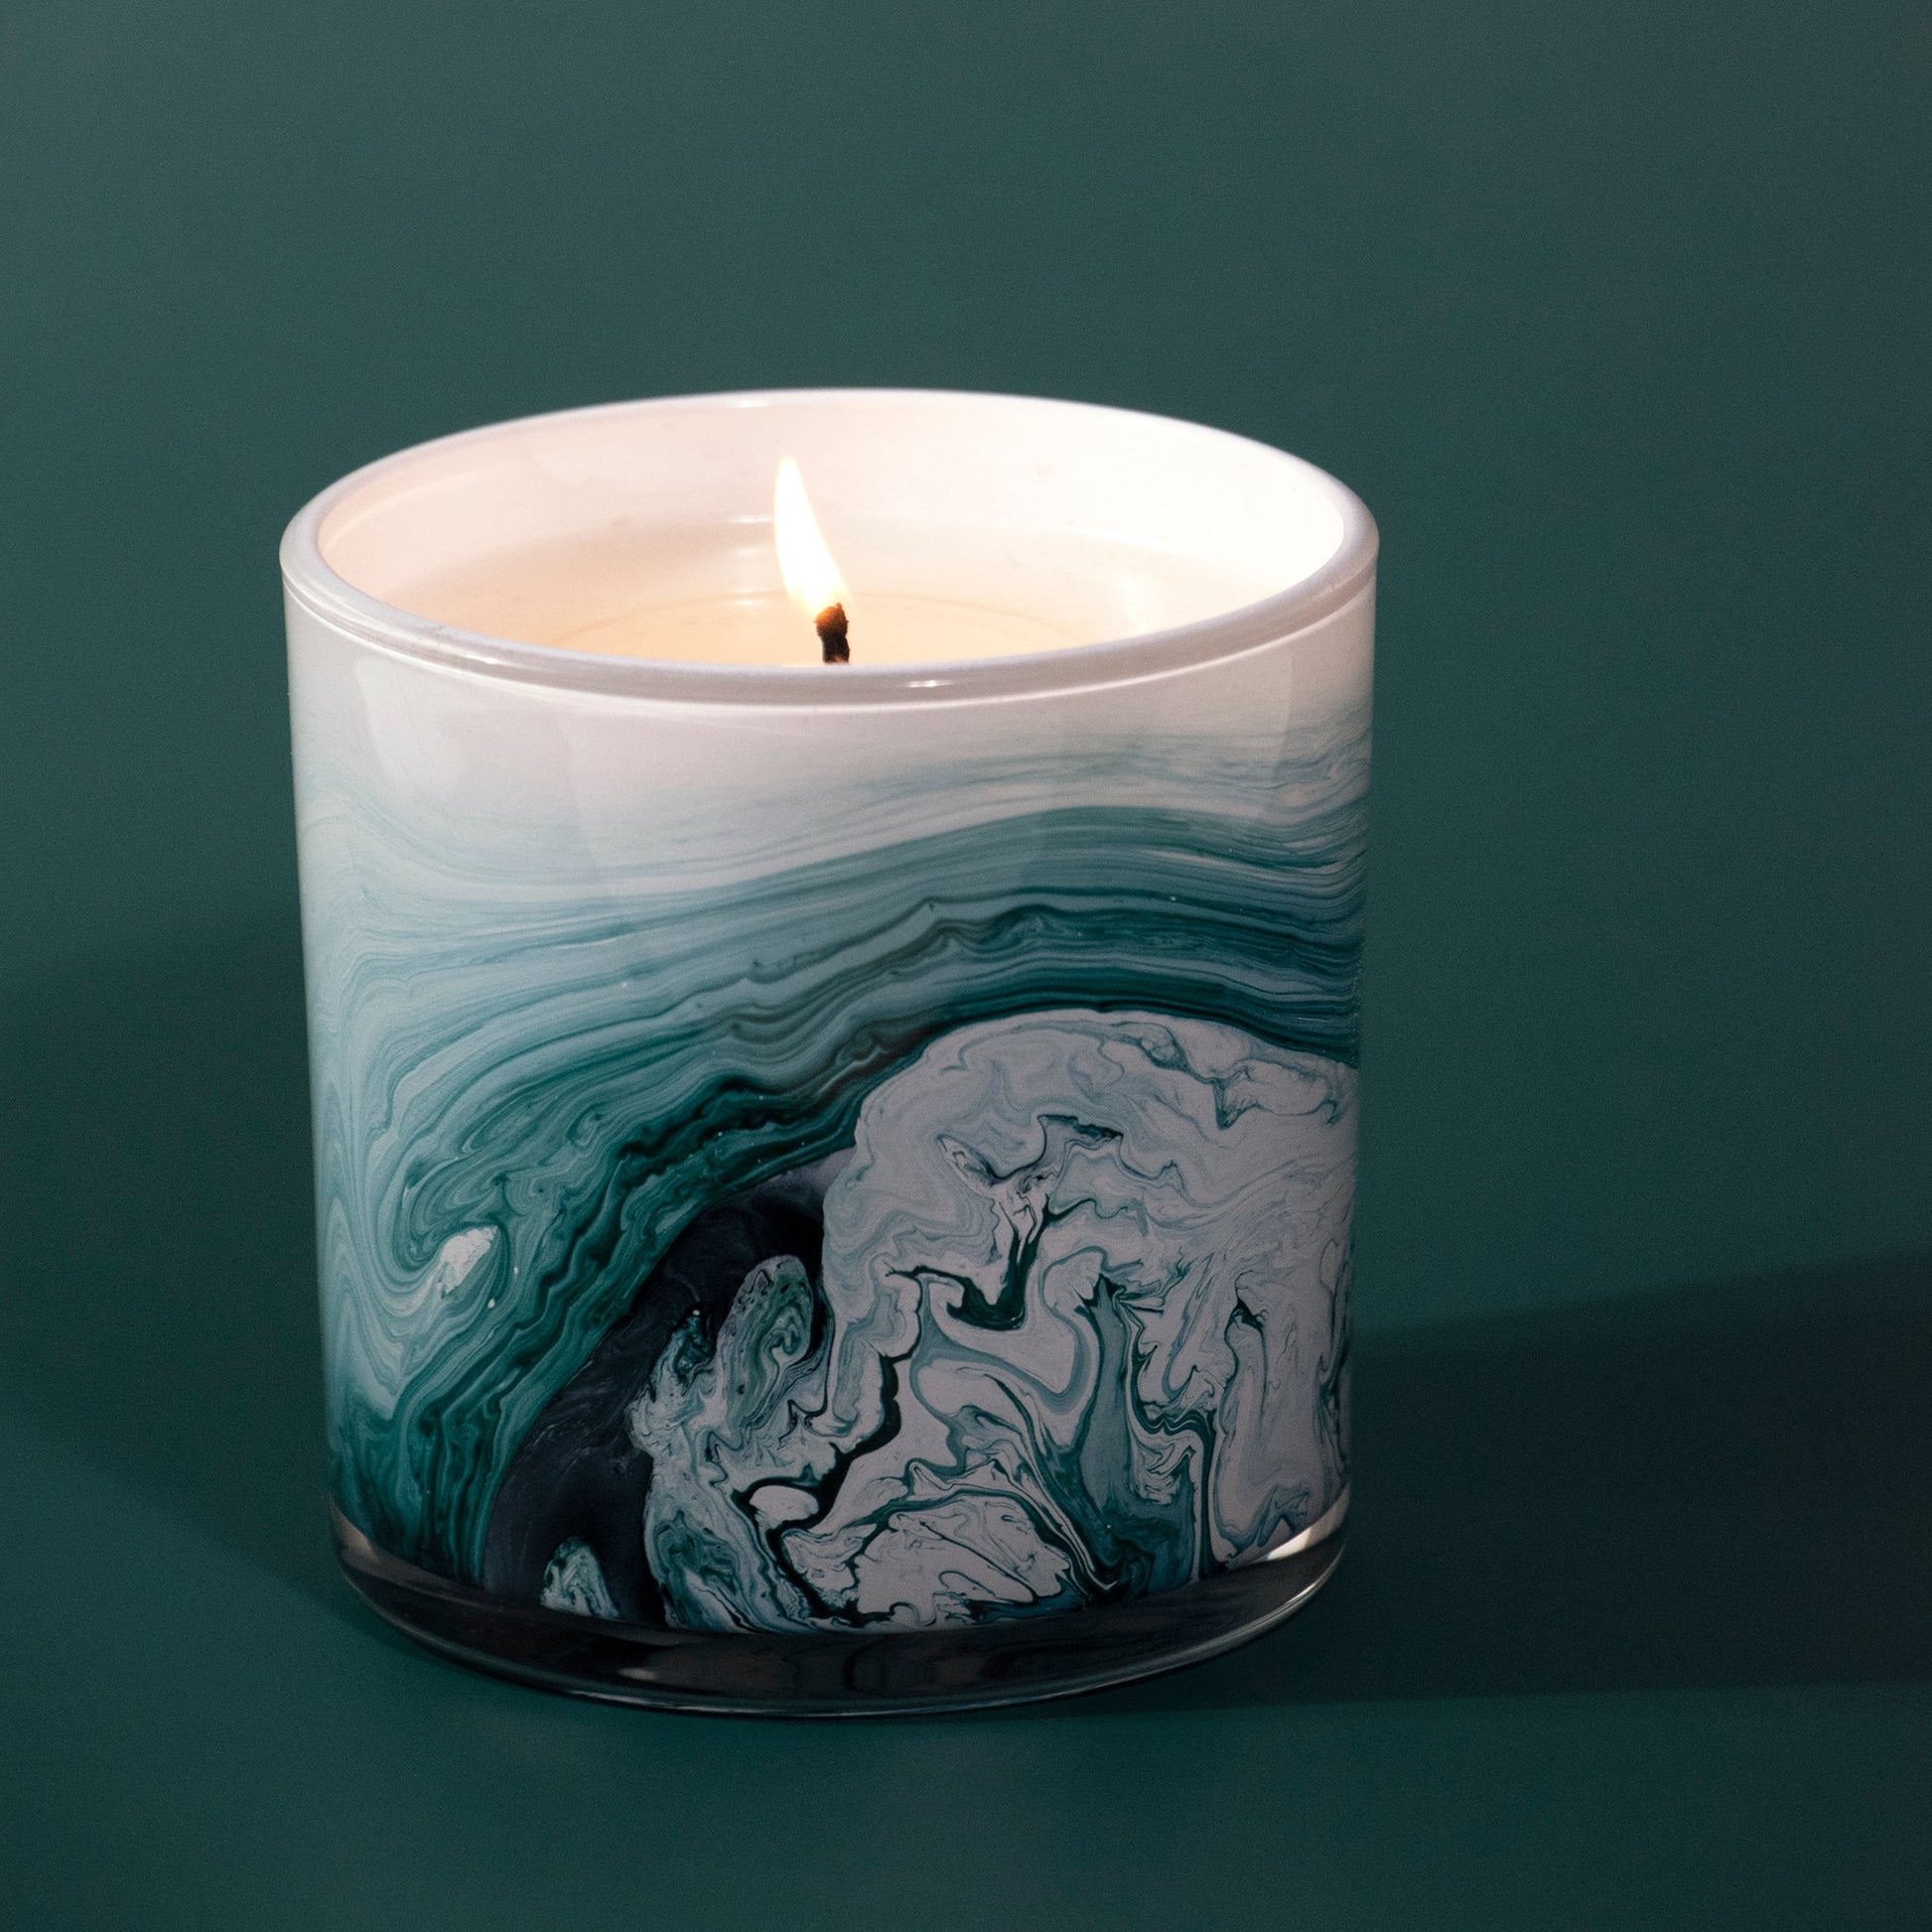 Swirl Glass Candle - Orchid & Cedar - Sprigbox